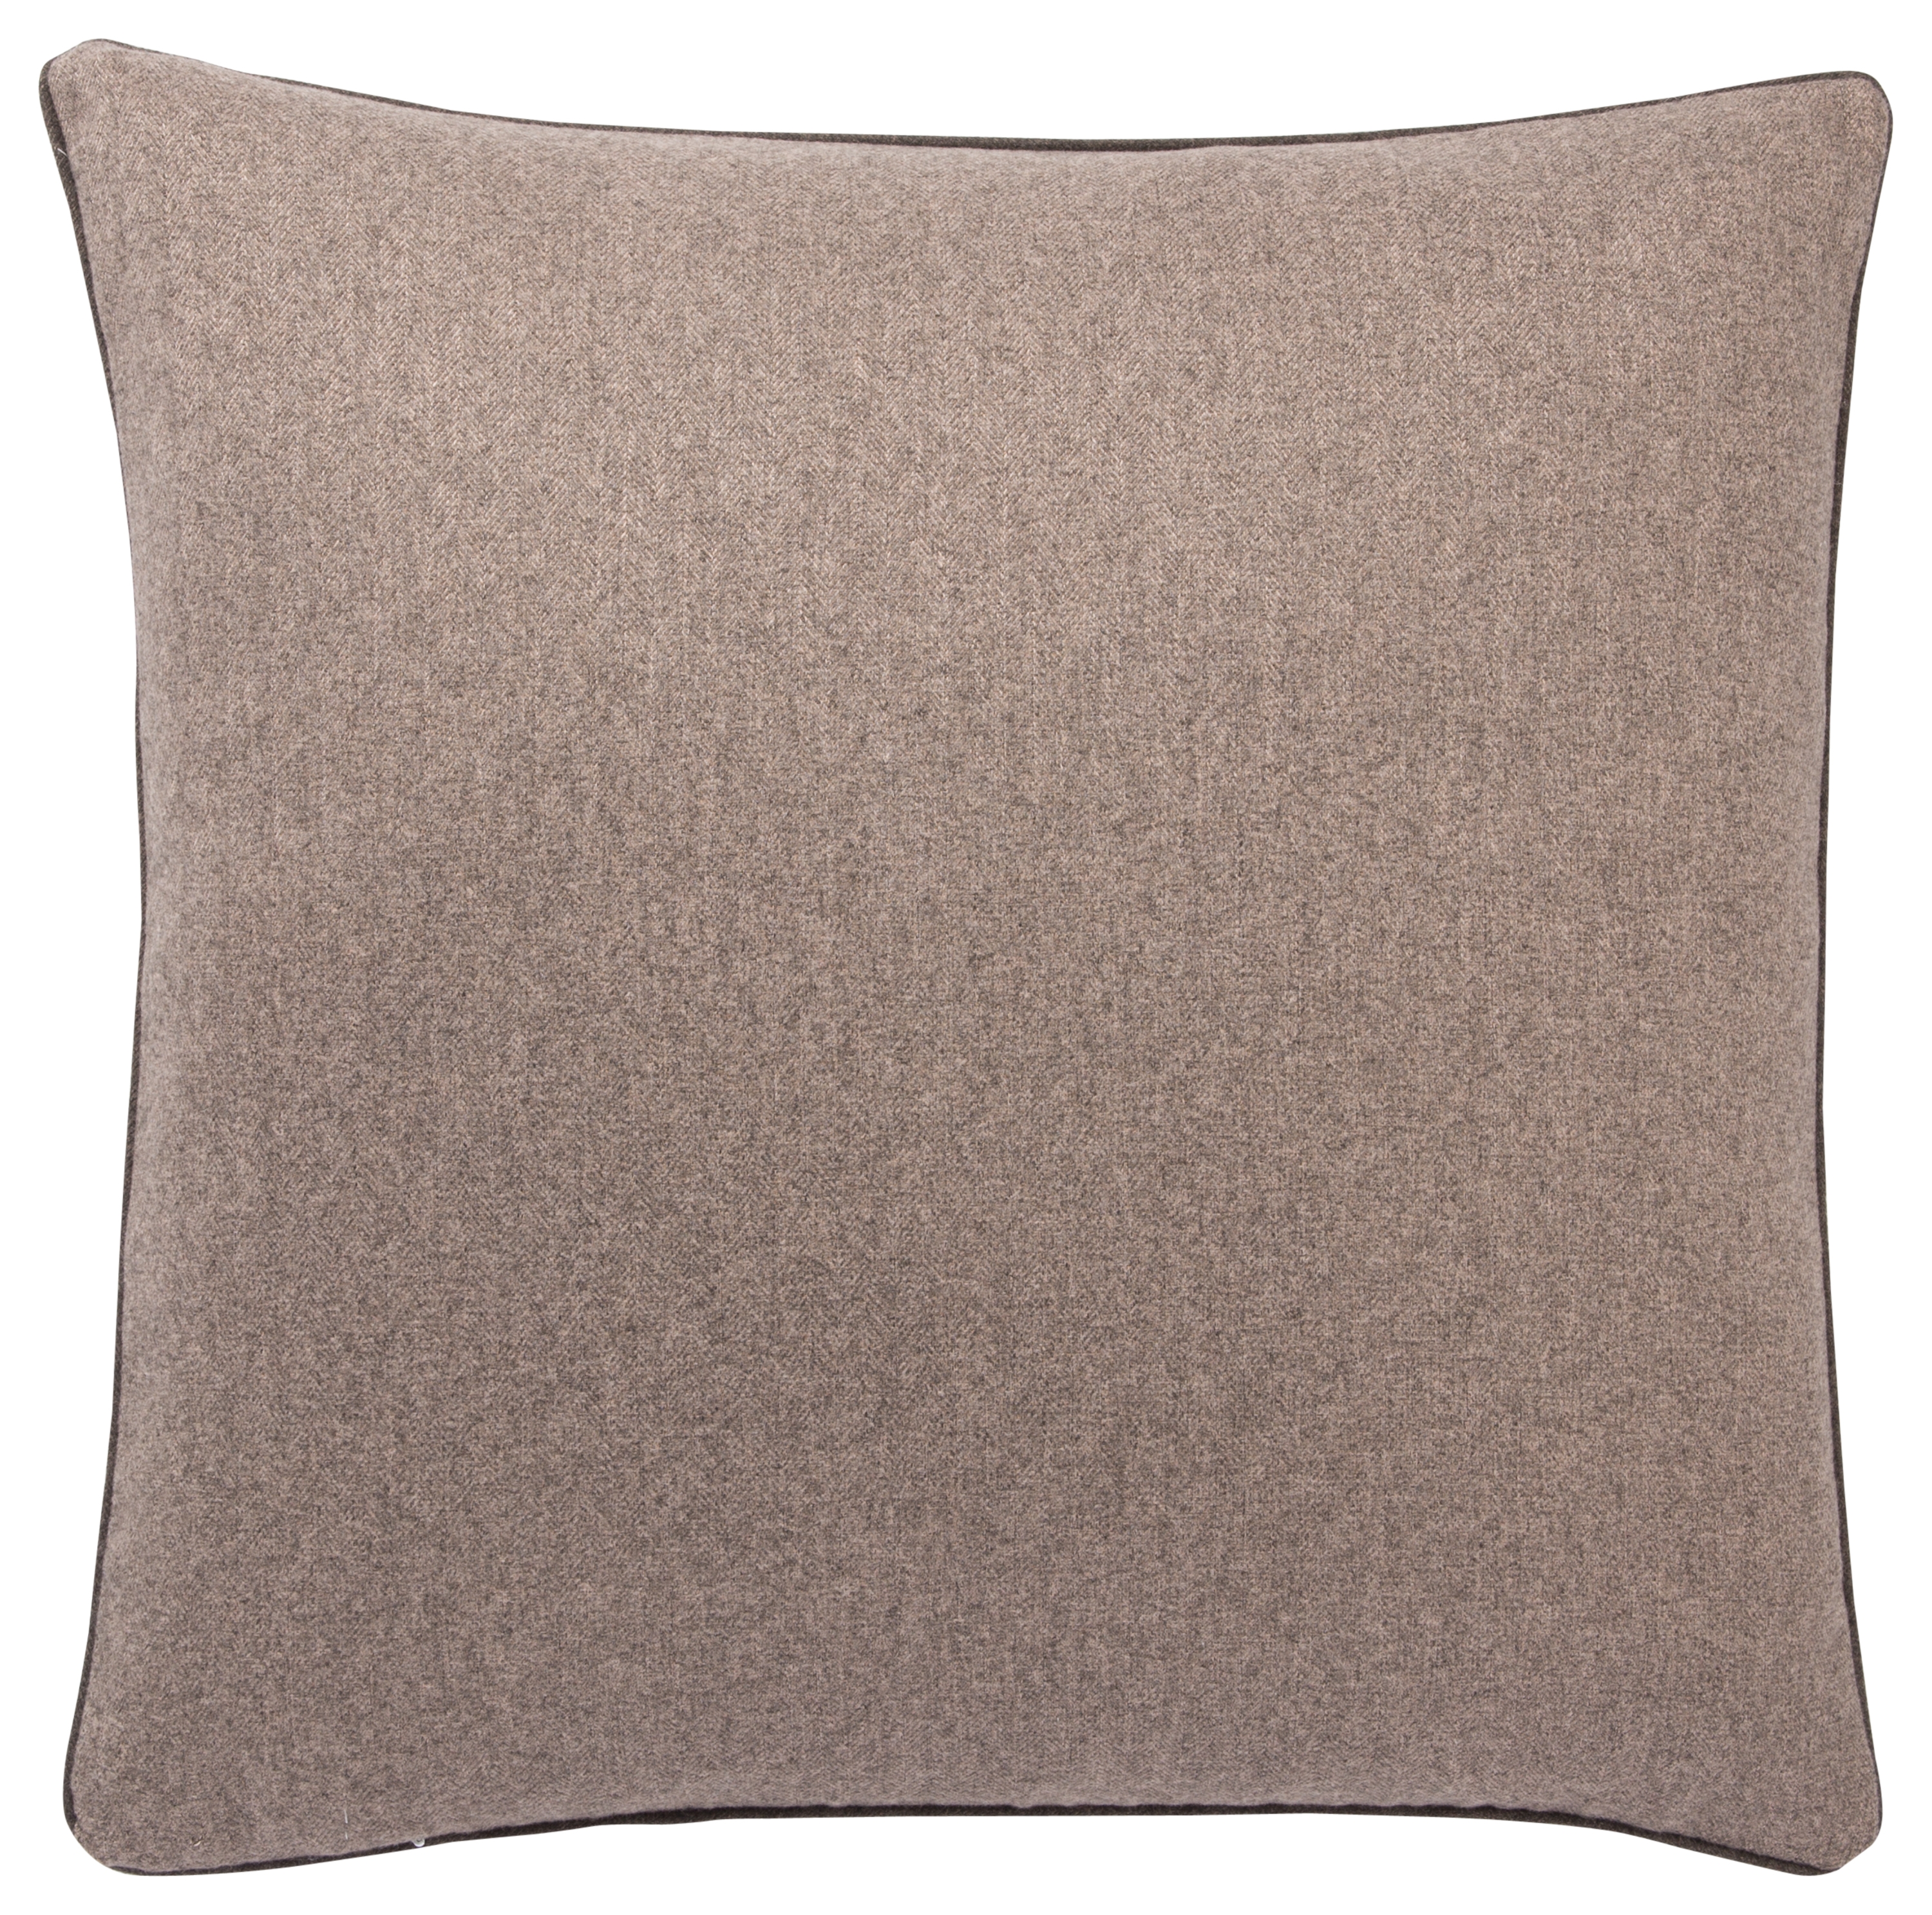 Design (US) Light Brown 22"X22" Pillow - Image 1